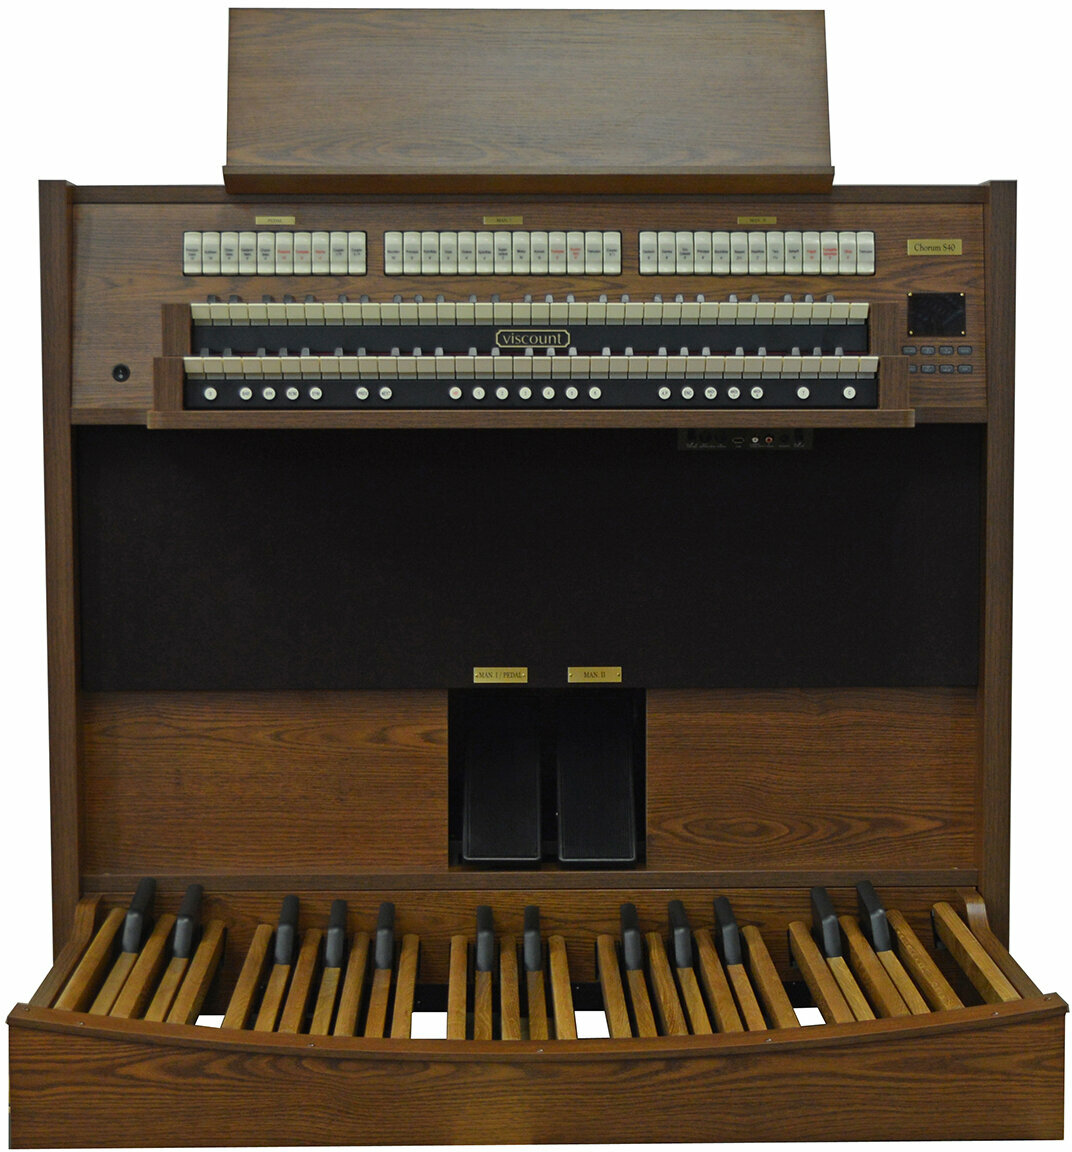 Órgão eletrónico Viscount Chorum S 40 Órgão eletrónico